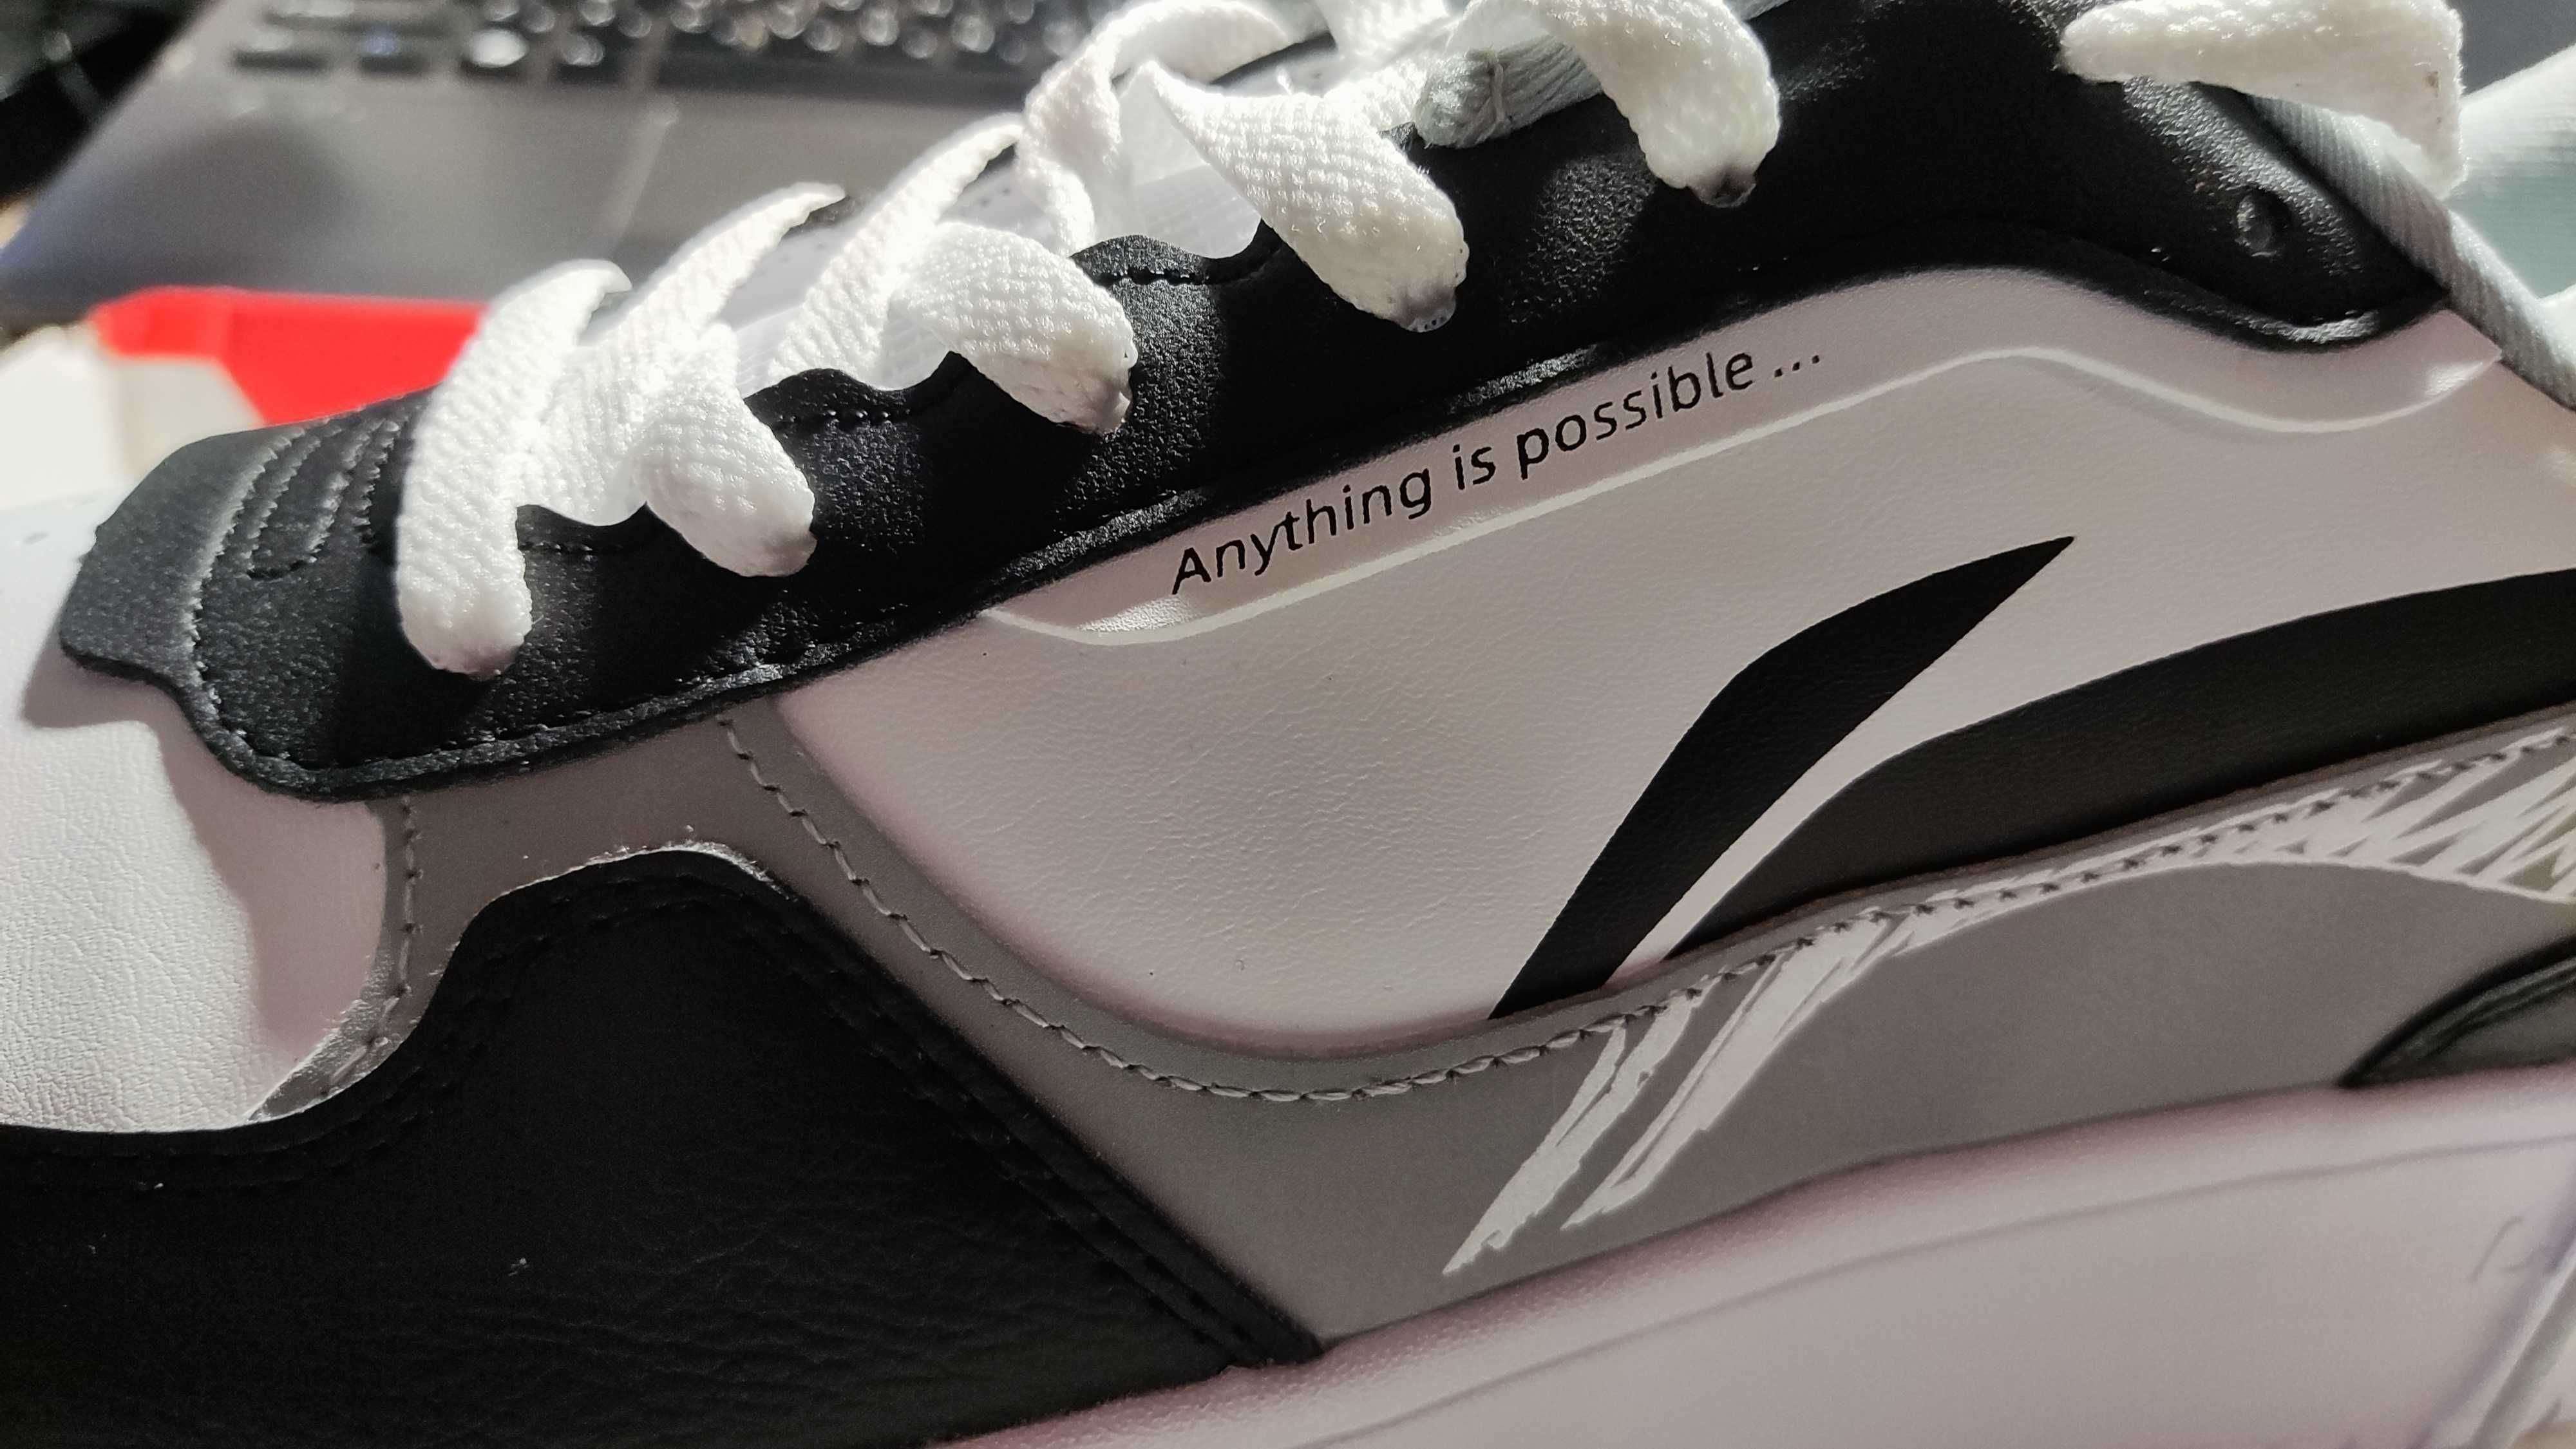 Новые оригинальные кроссовки Li-Ning (46 размер, не маломерки)